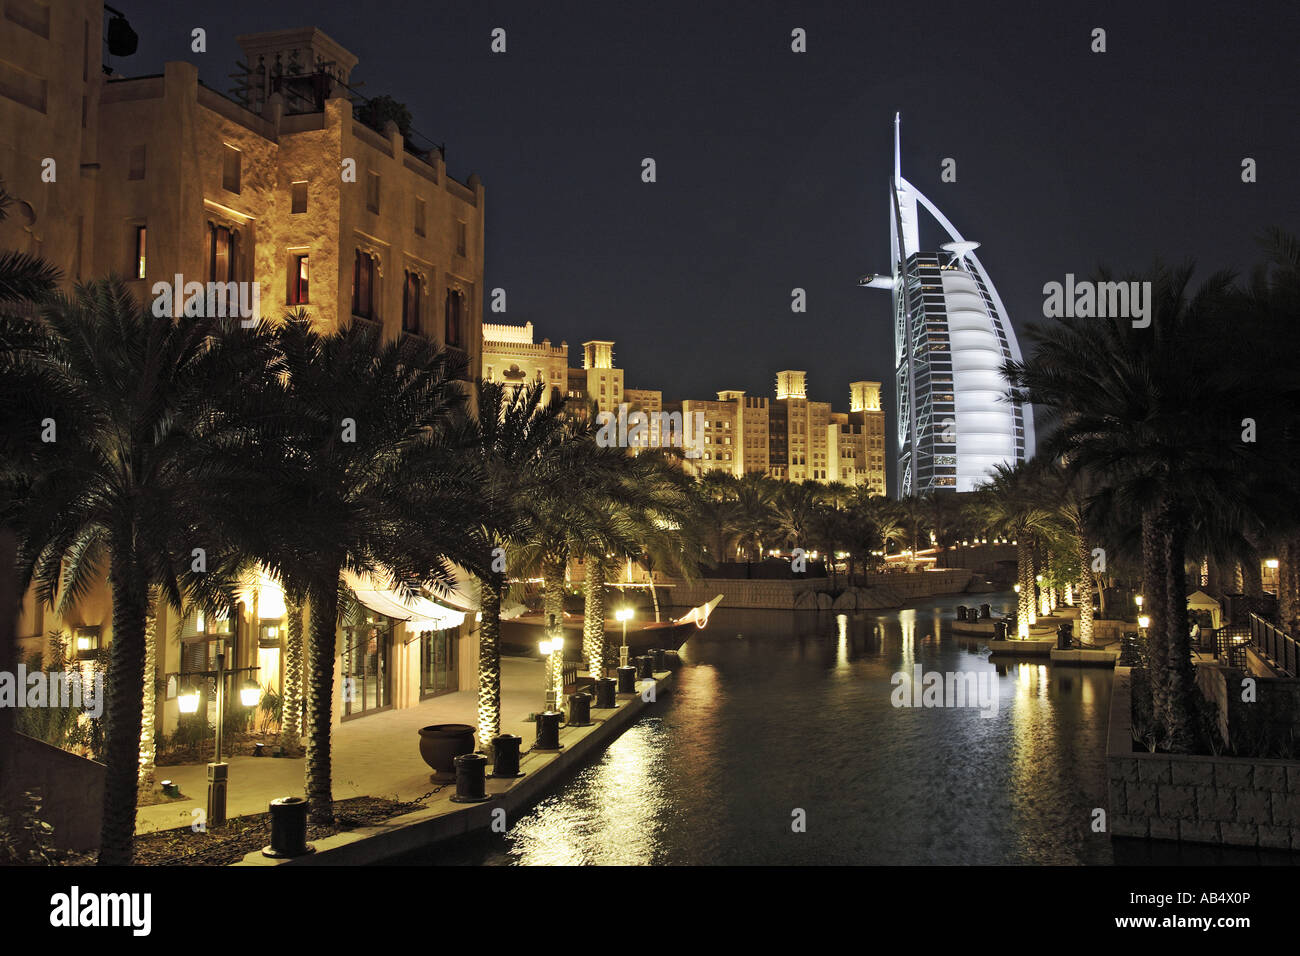 Burj al Arab hotel at night, view across Madinat Jumeirah, Dubai Stock Photo